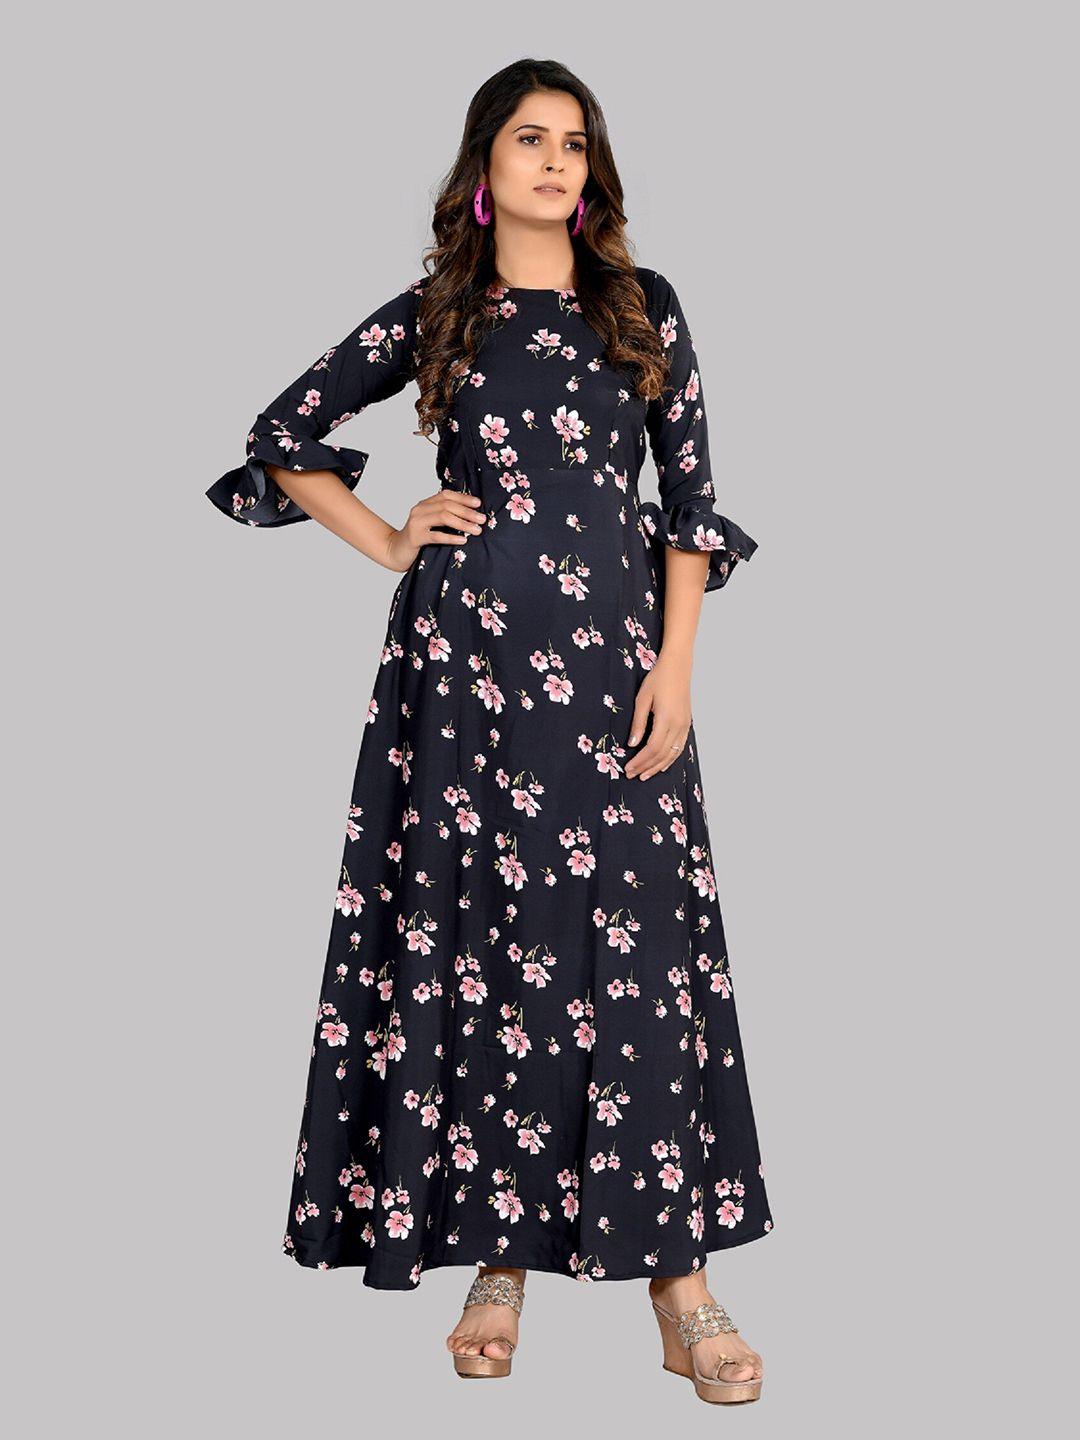 aucreations women black floral crepe maxi dress